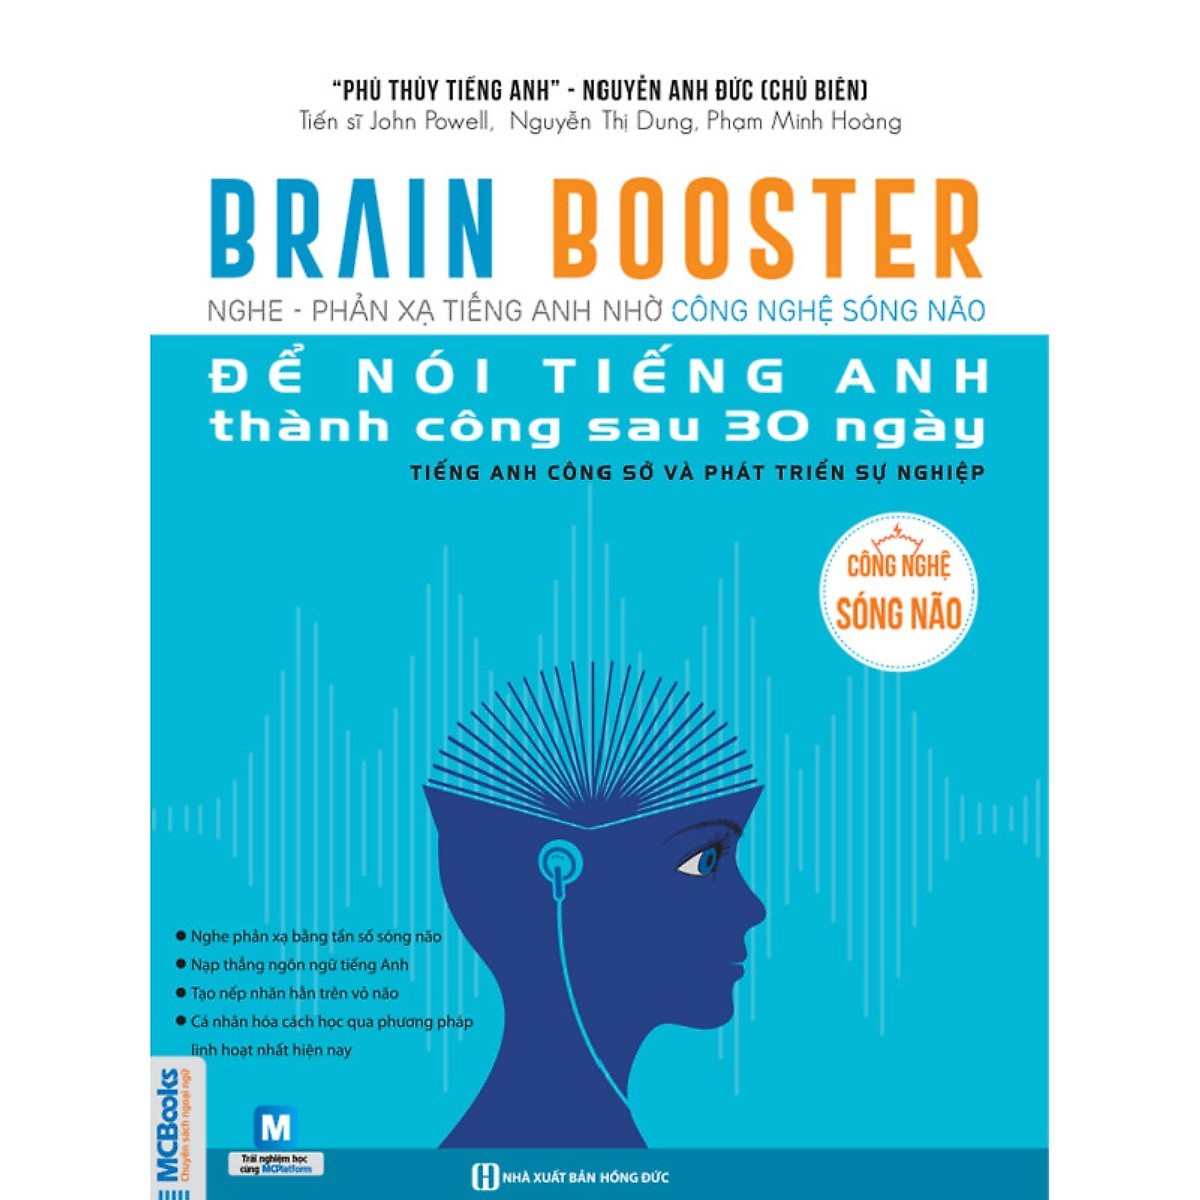 Combo 2 Bộ Sách Brain Booster - Nghe - Phản Xạ Tiếng Anh Nhờ Công Nghệ Sóng Não (Học kèm App Mcbooks Application)